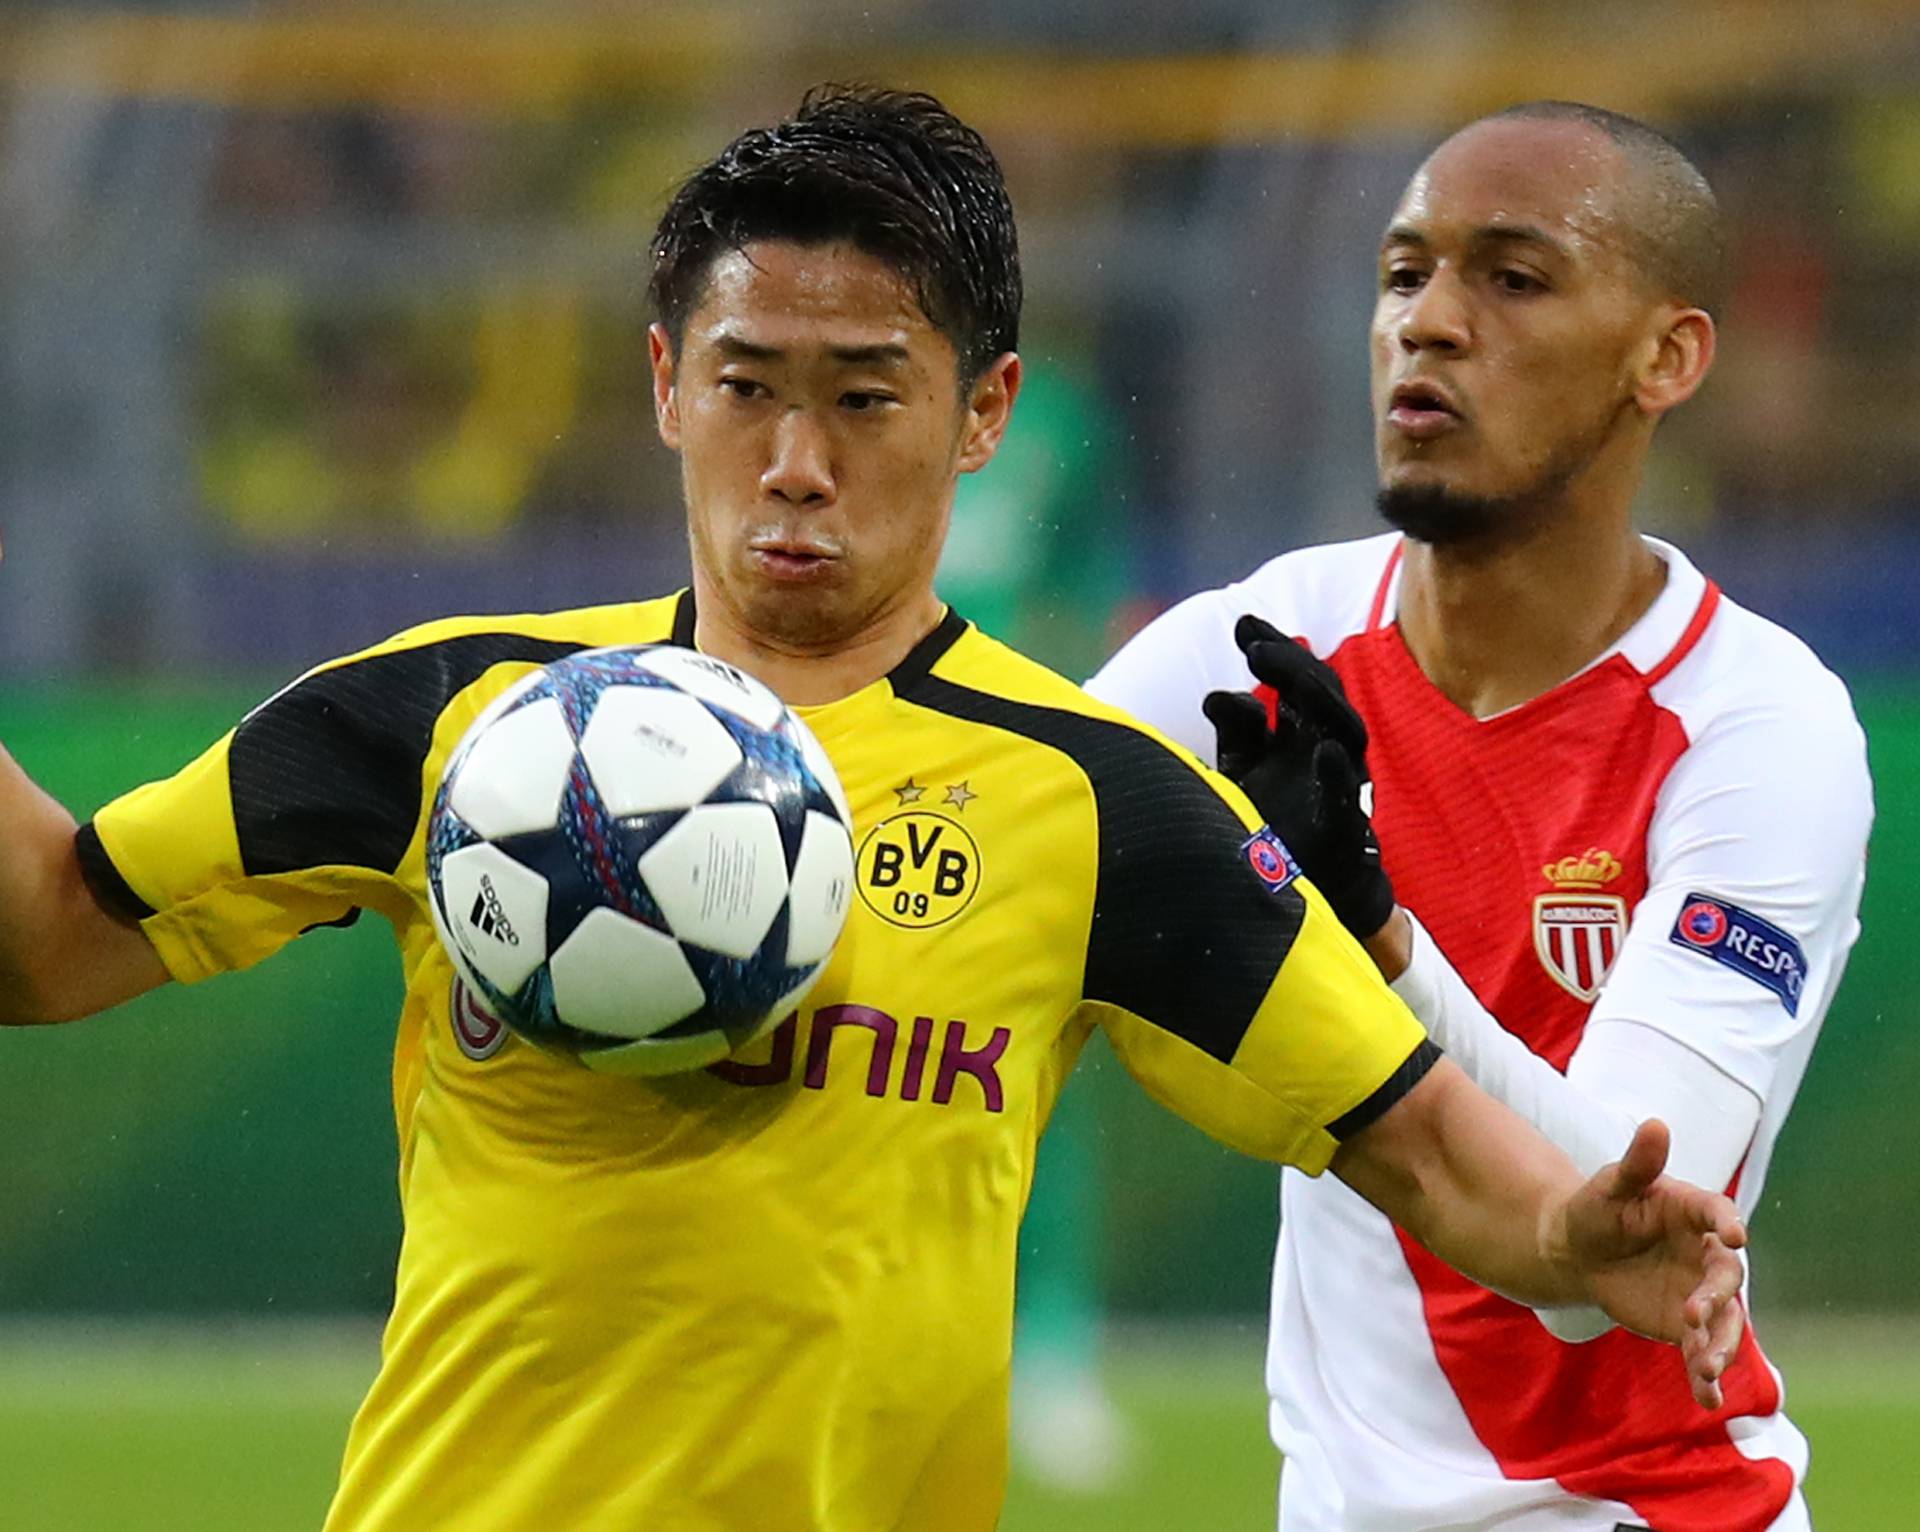 Borussia Dortmund's Shinji Kagawa in action with Monaco's Fabinho